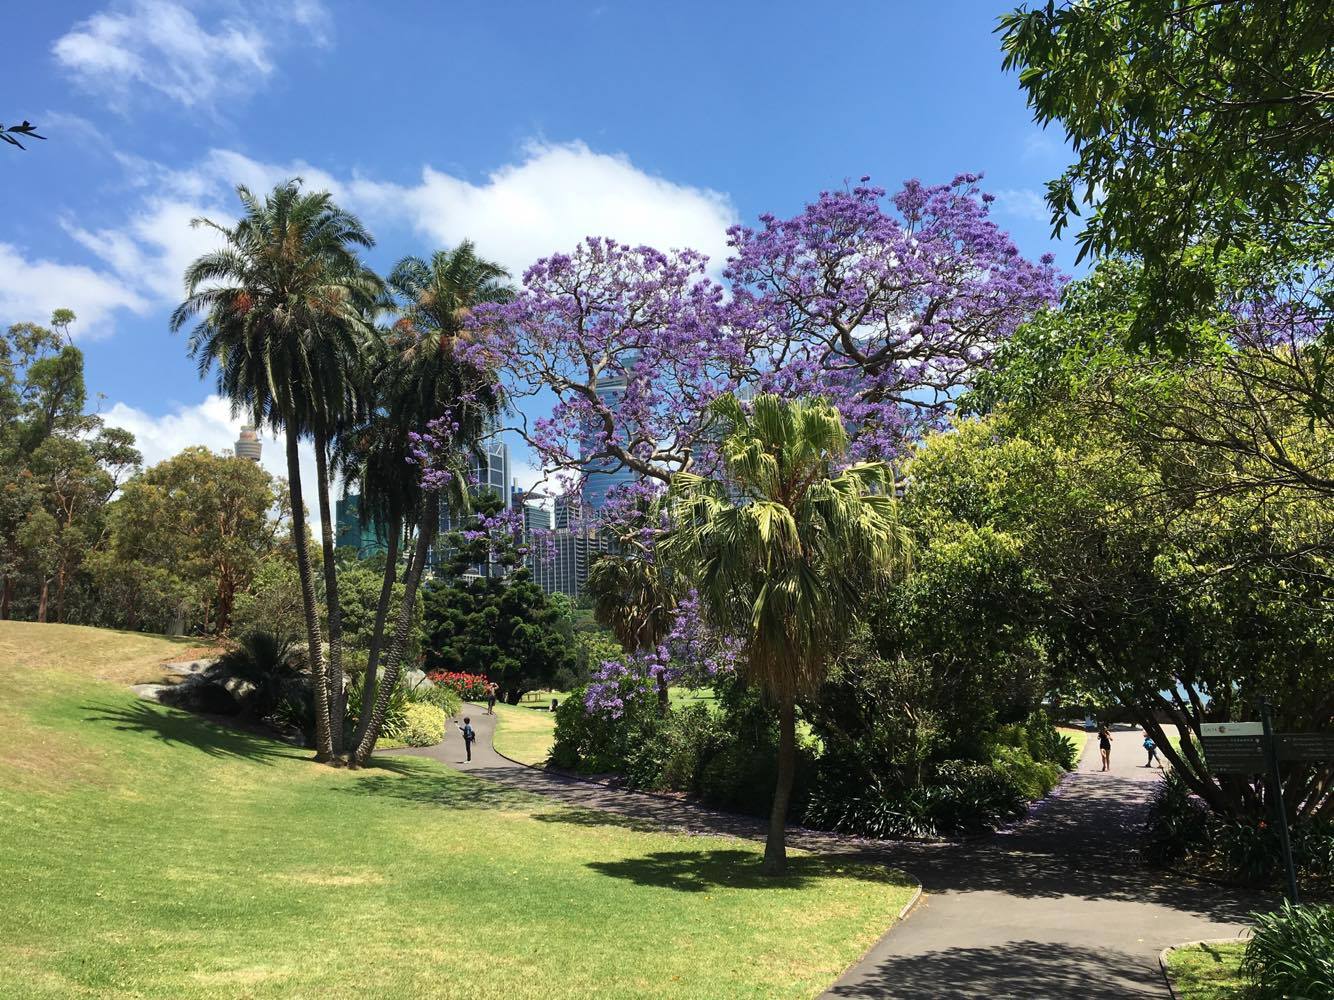 Sydney's Royal Botanic Garden